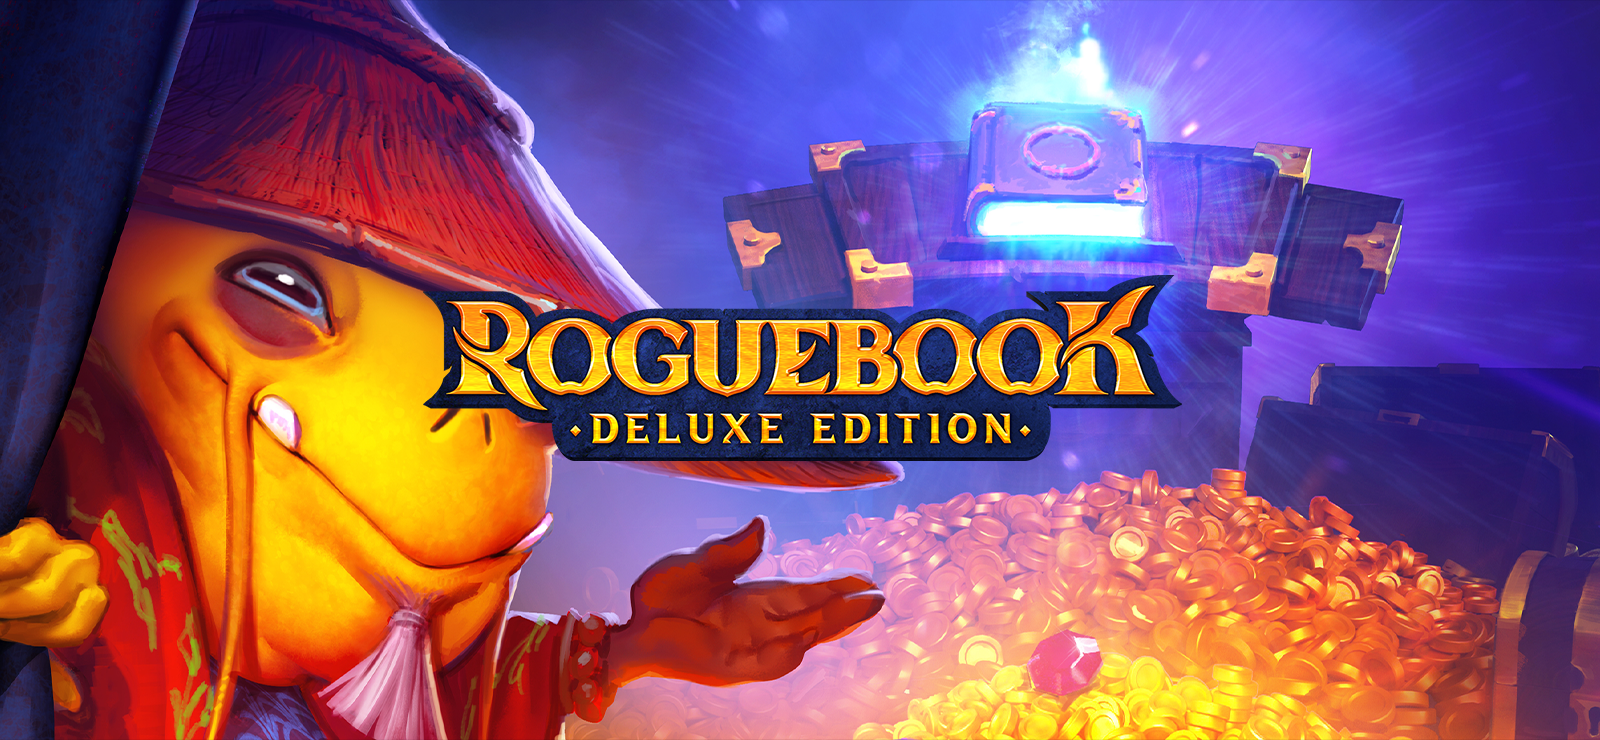 Roguebook - Deluxe Edition